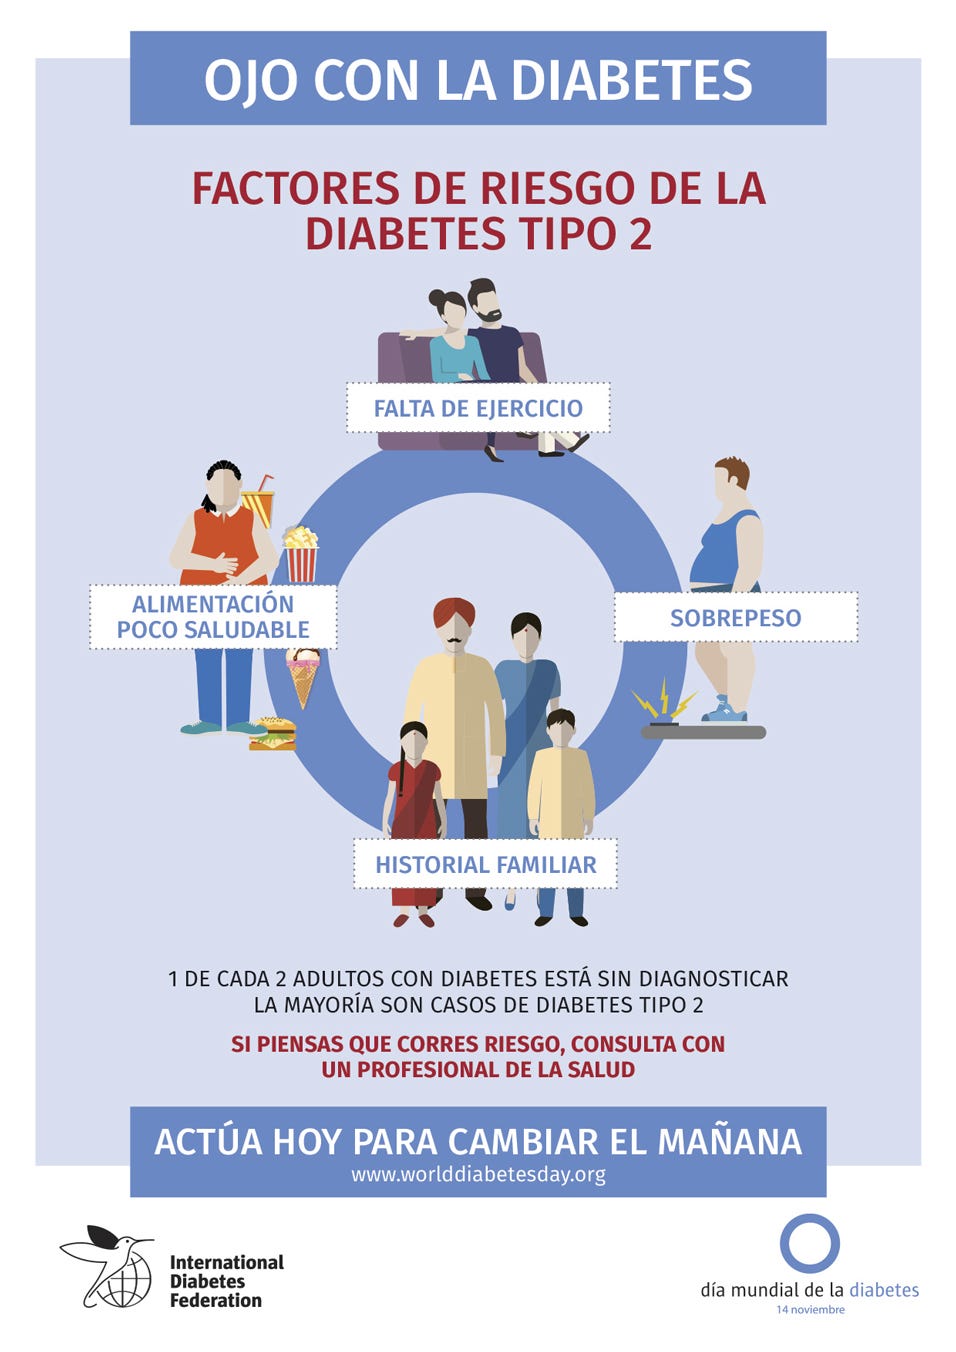 Diabetes y salud cardiovascular: ¿Qué relación tienen?